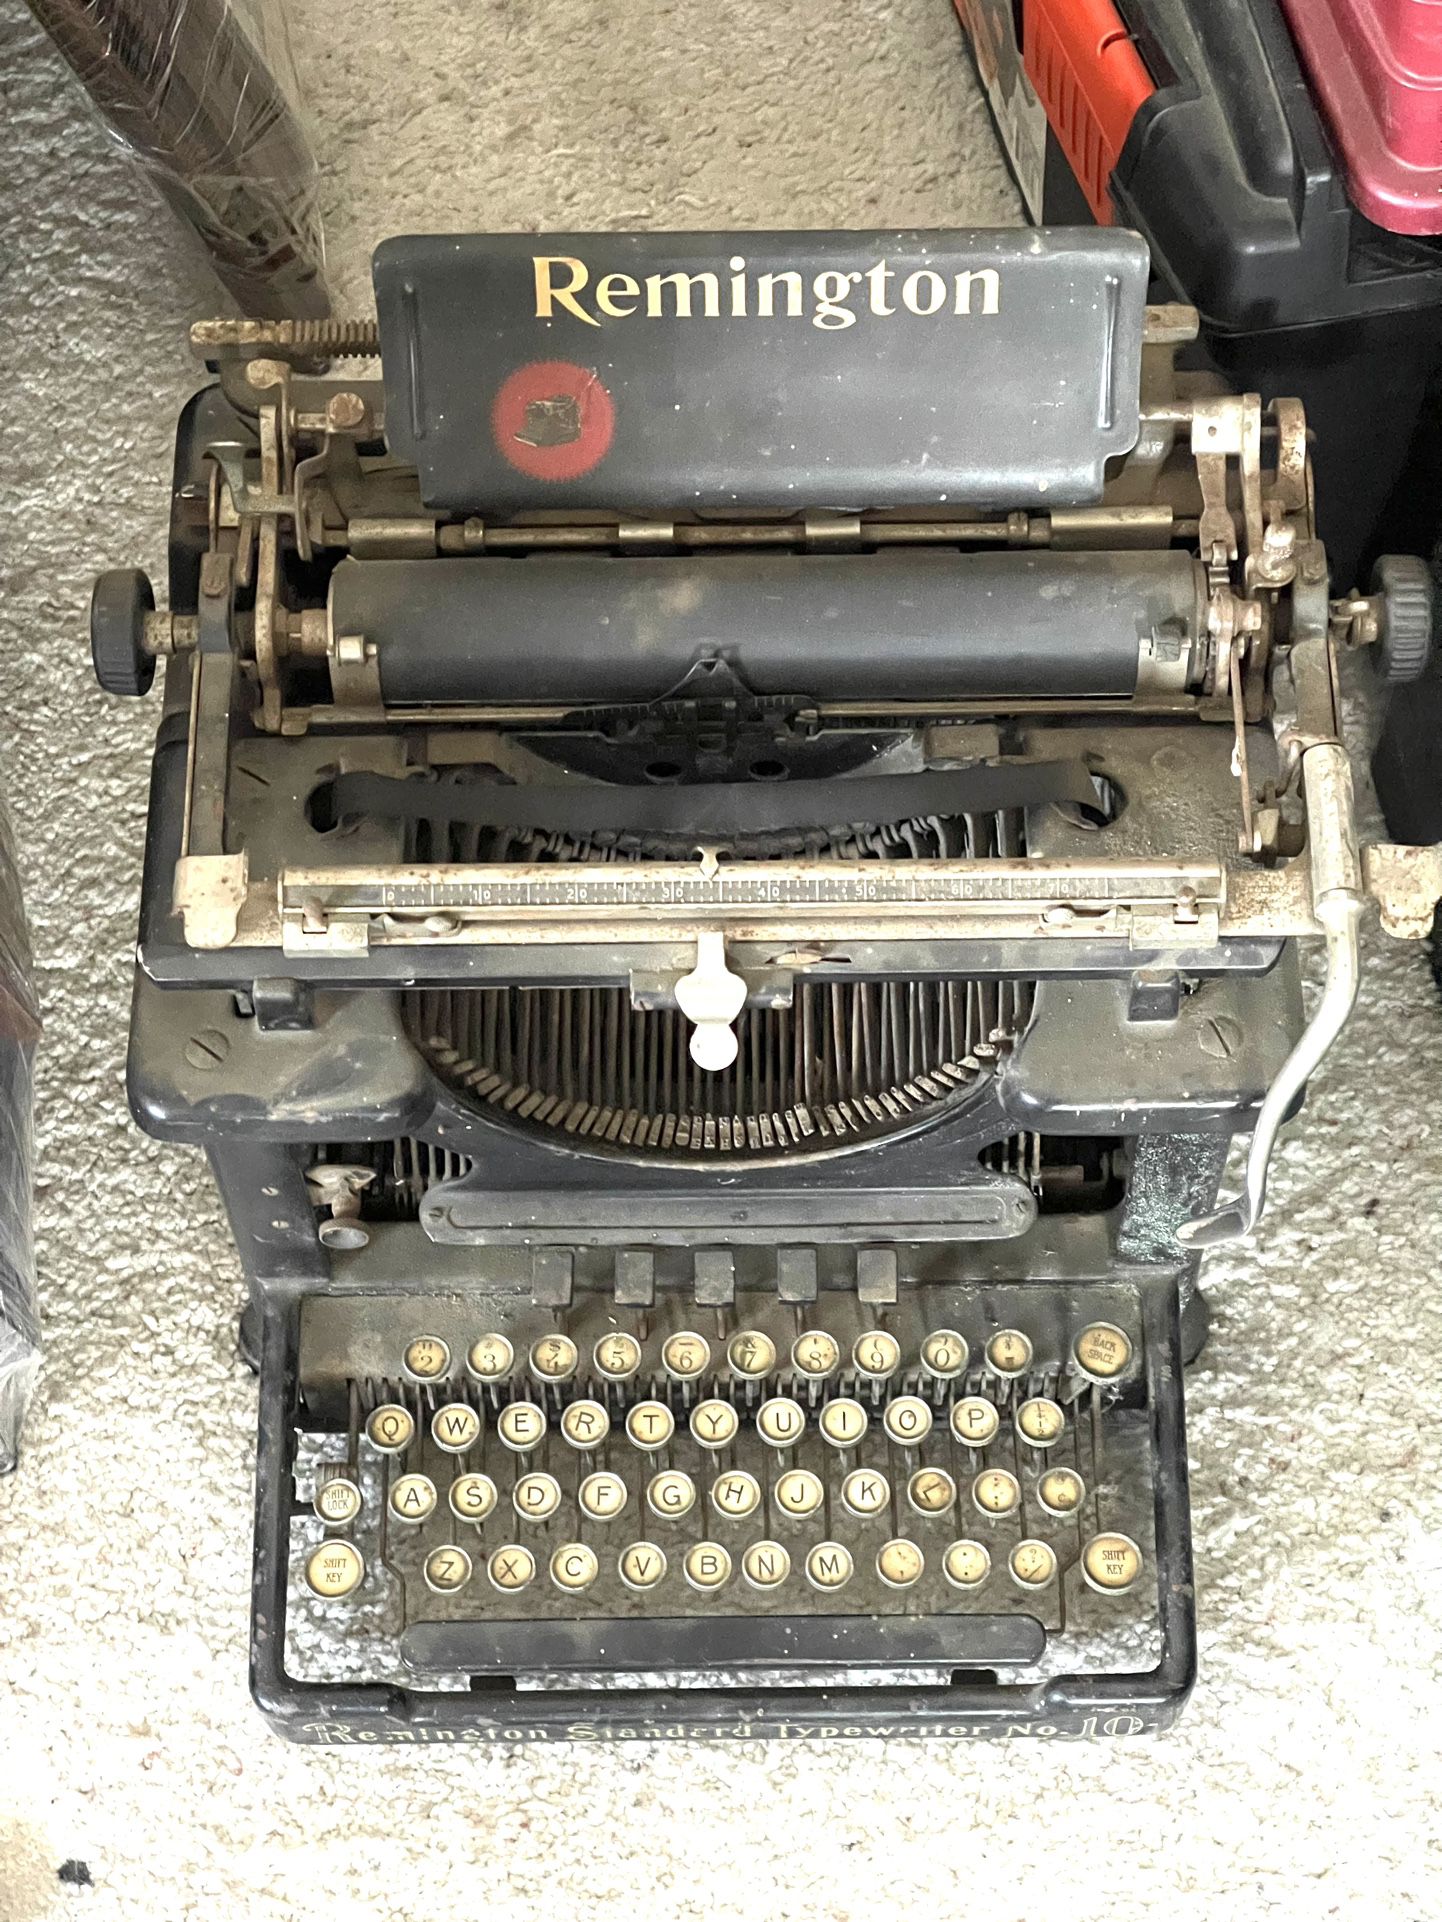 Antique functional 1920s Remington typewriter